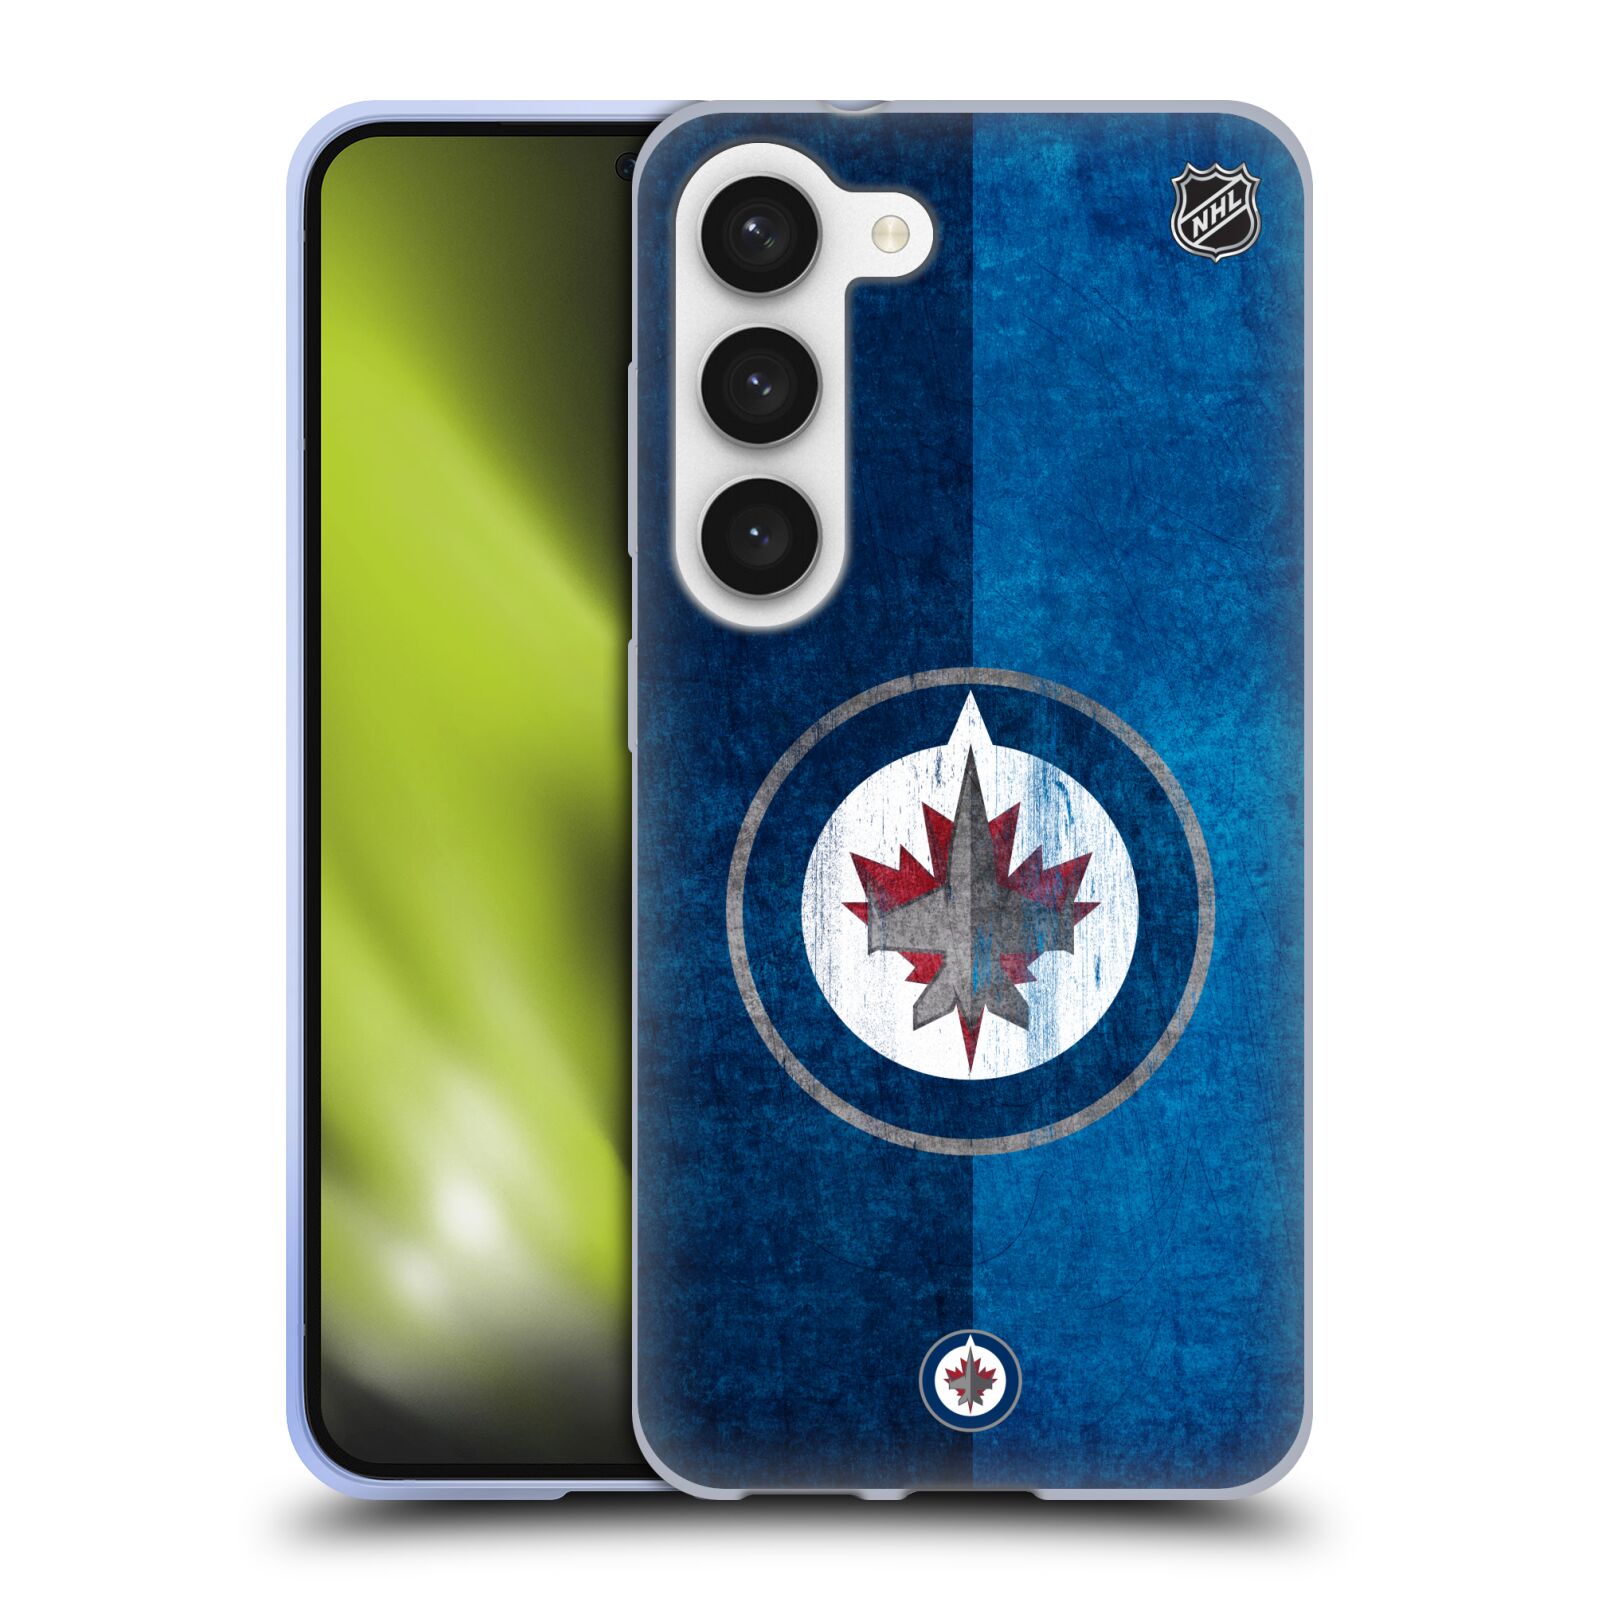 Silikonové pouzdro na mobil Samsung Galaxy S23 - NHL - Půlené logo Winnipeg Jets (Silikonový kryt, obal, pouzdro na mobilní telefon Samsung Galaxy S23 s licencovaným motivem NHL - Půlené logo Winnipeg Jets)